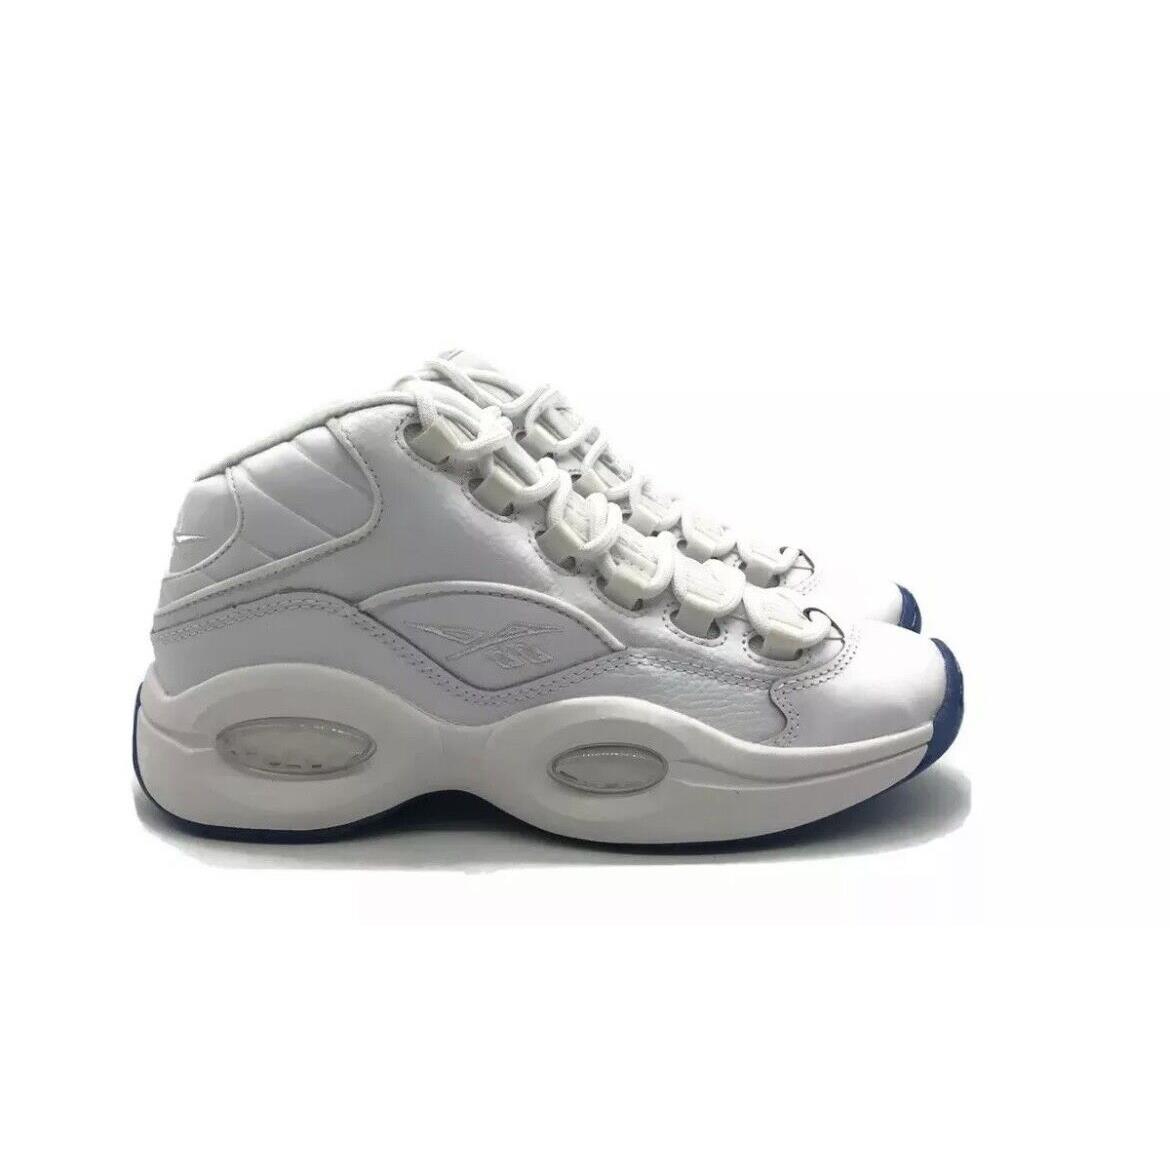 Reebok Question Mid J Iverson Grade School Sz 5.5 Shoe White School Sneaker - White